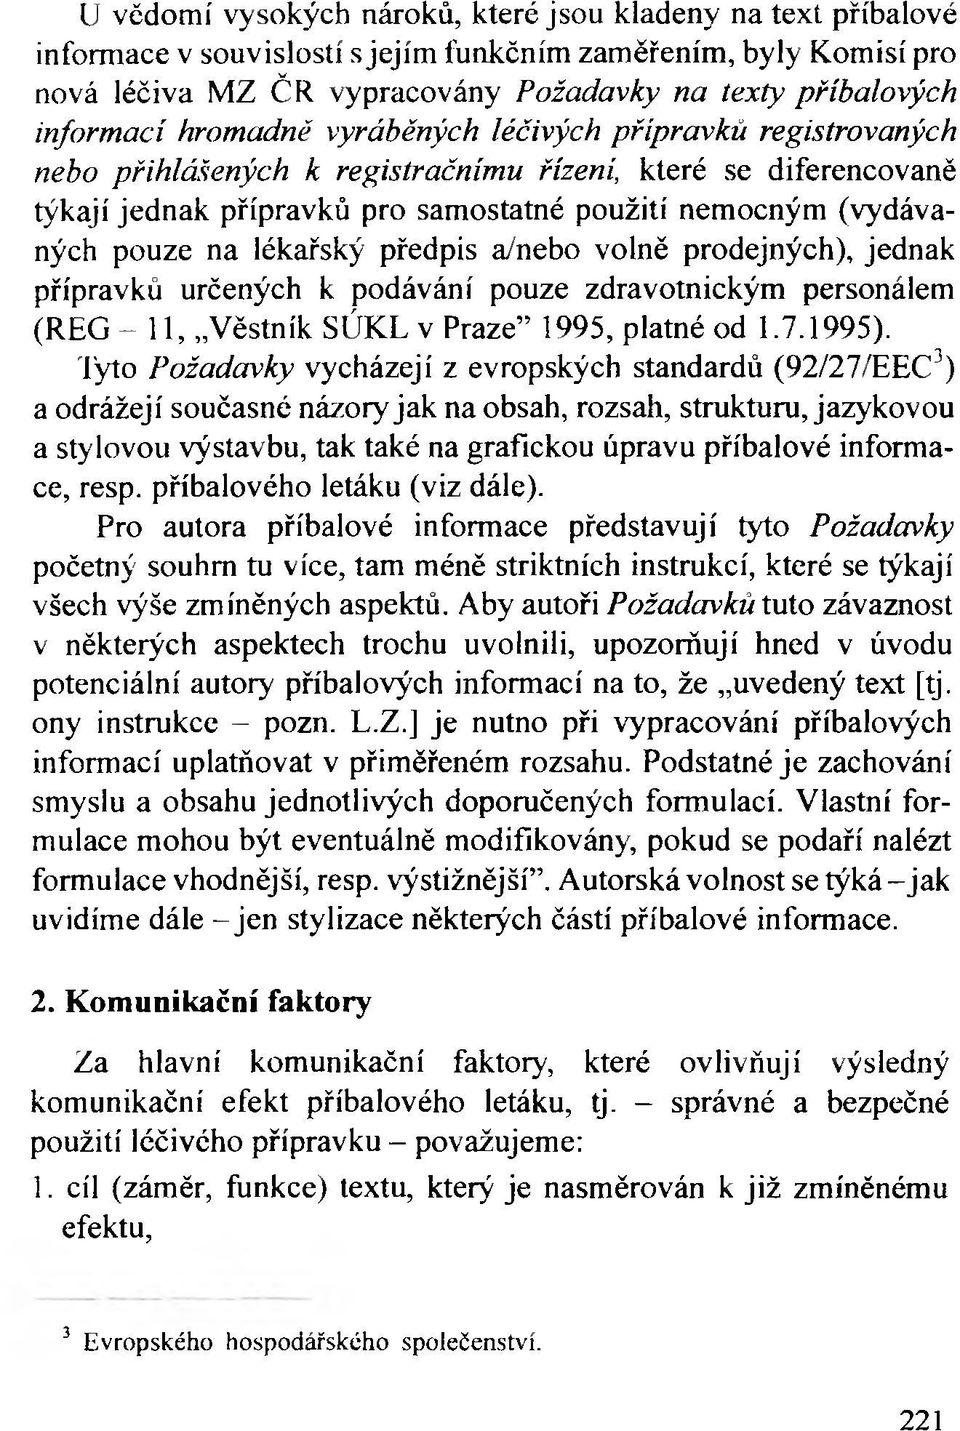 pouze na lékařský předpis a/nebo volně prodejných), jednak přípravků určených к podávání pouze zdravotnickým personálem (REG - 1 1, Věstník SÚKL v Praze 1995, platné od 1.7.1995).